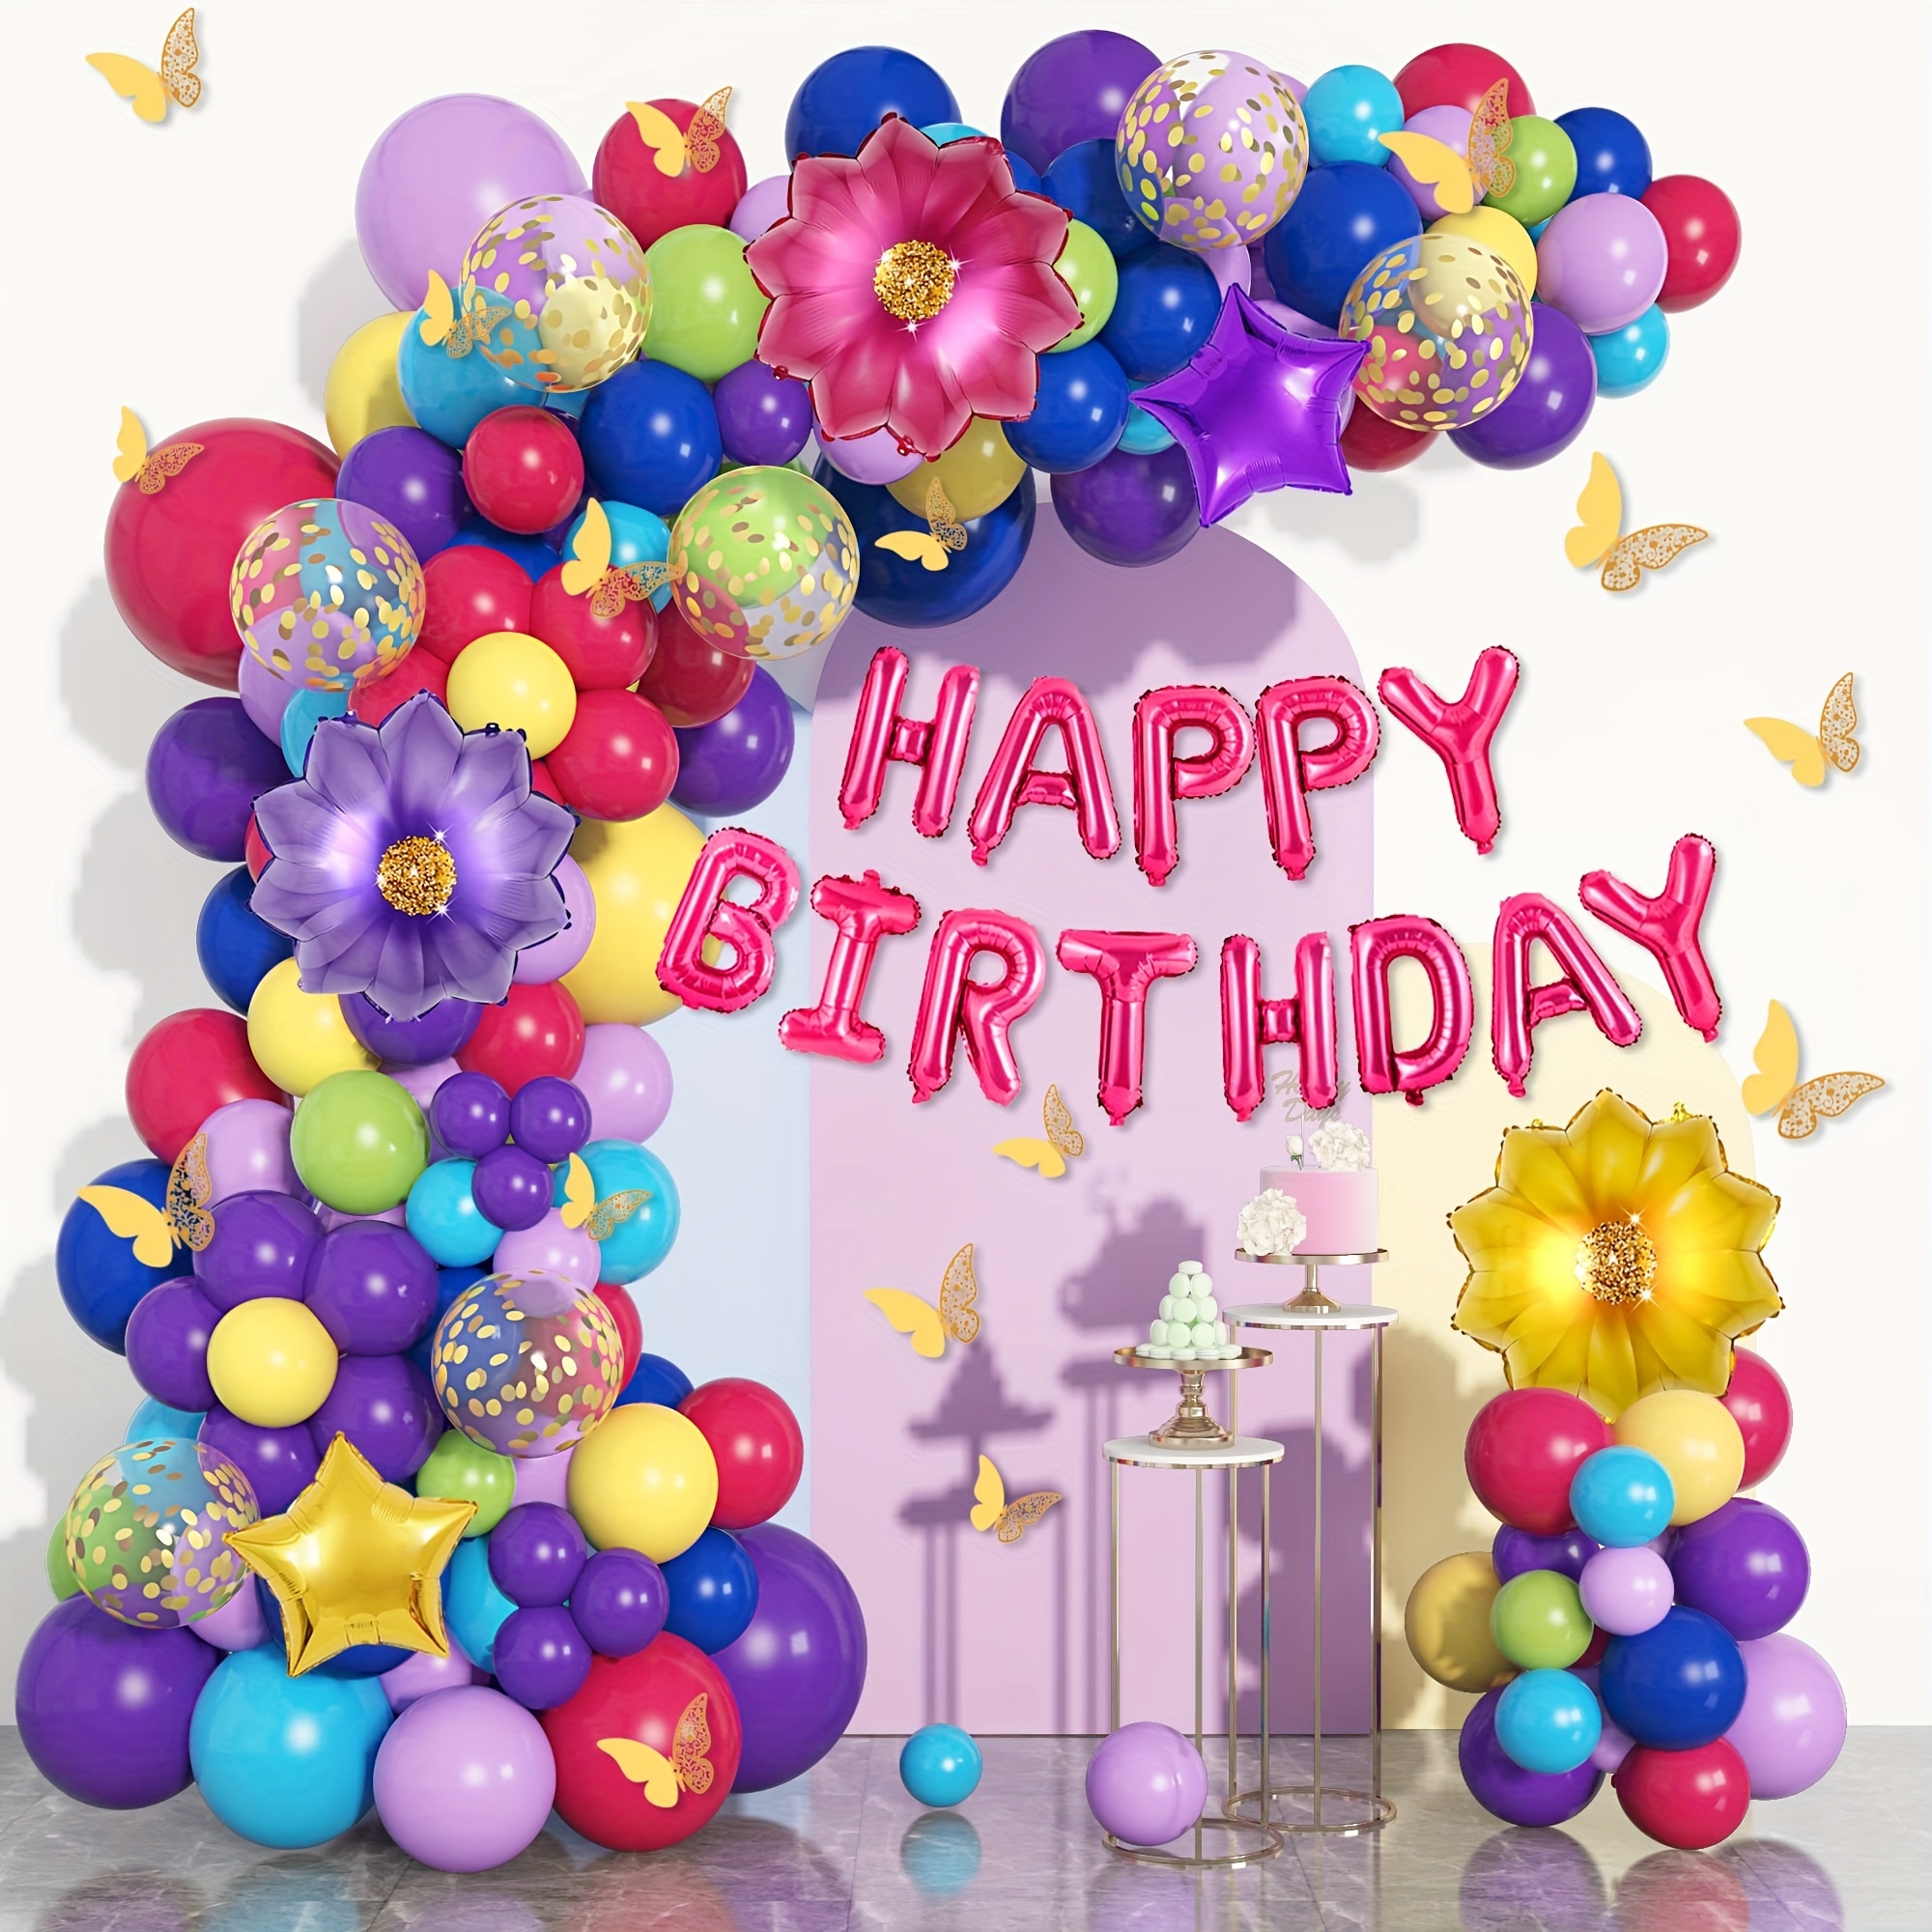  Encanto Birthday Party Supplies, Encanto Balloons Arch